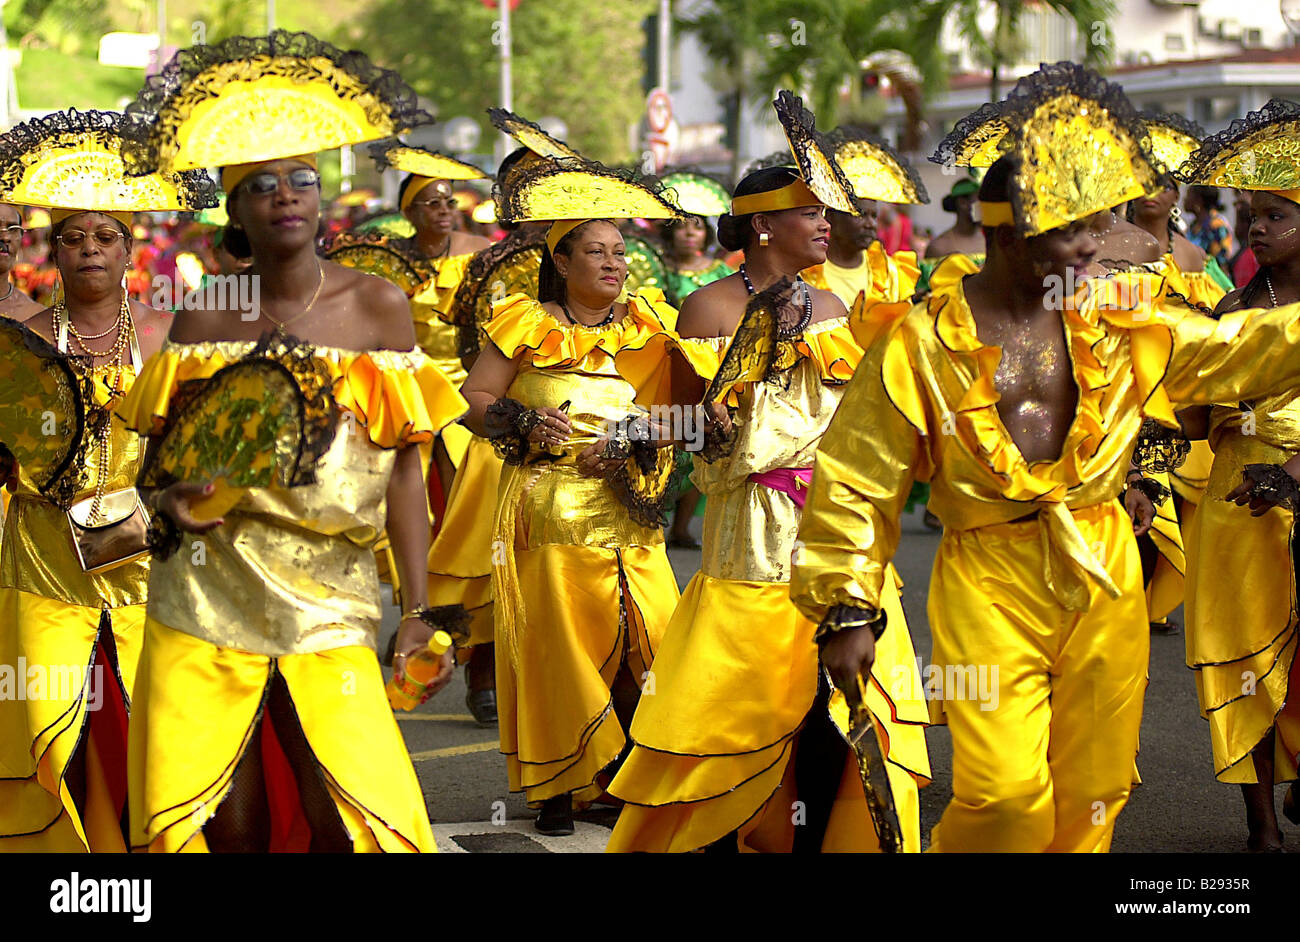 Antilles martinique costume déguisement carnaval Masques personnes scènes de vie Banque D'Images